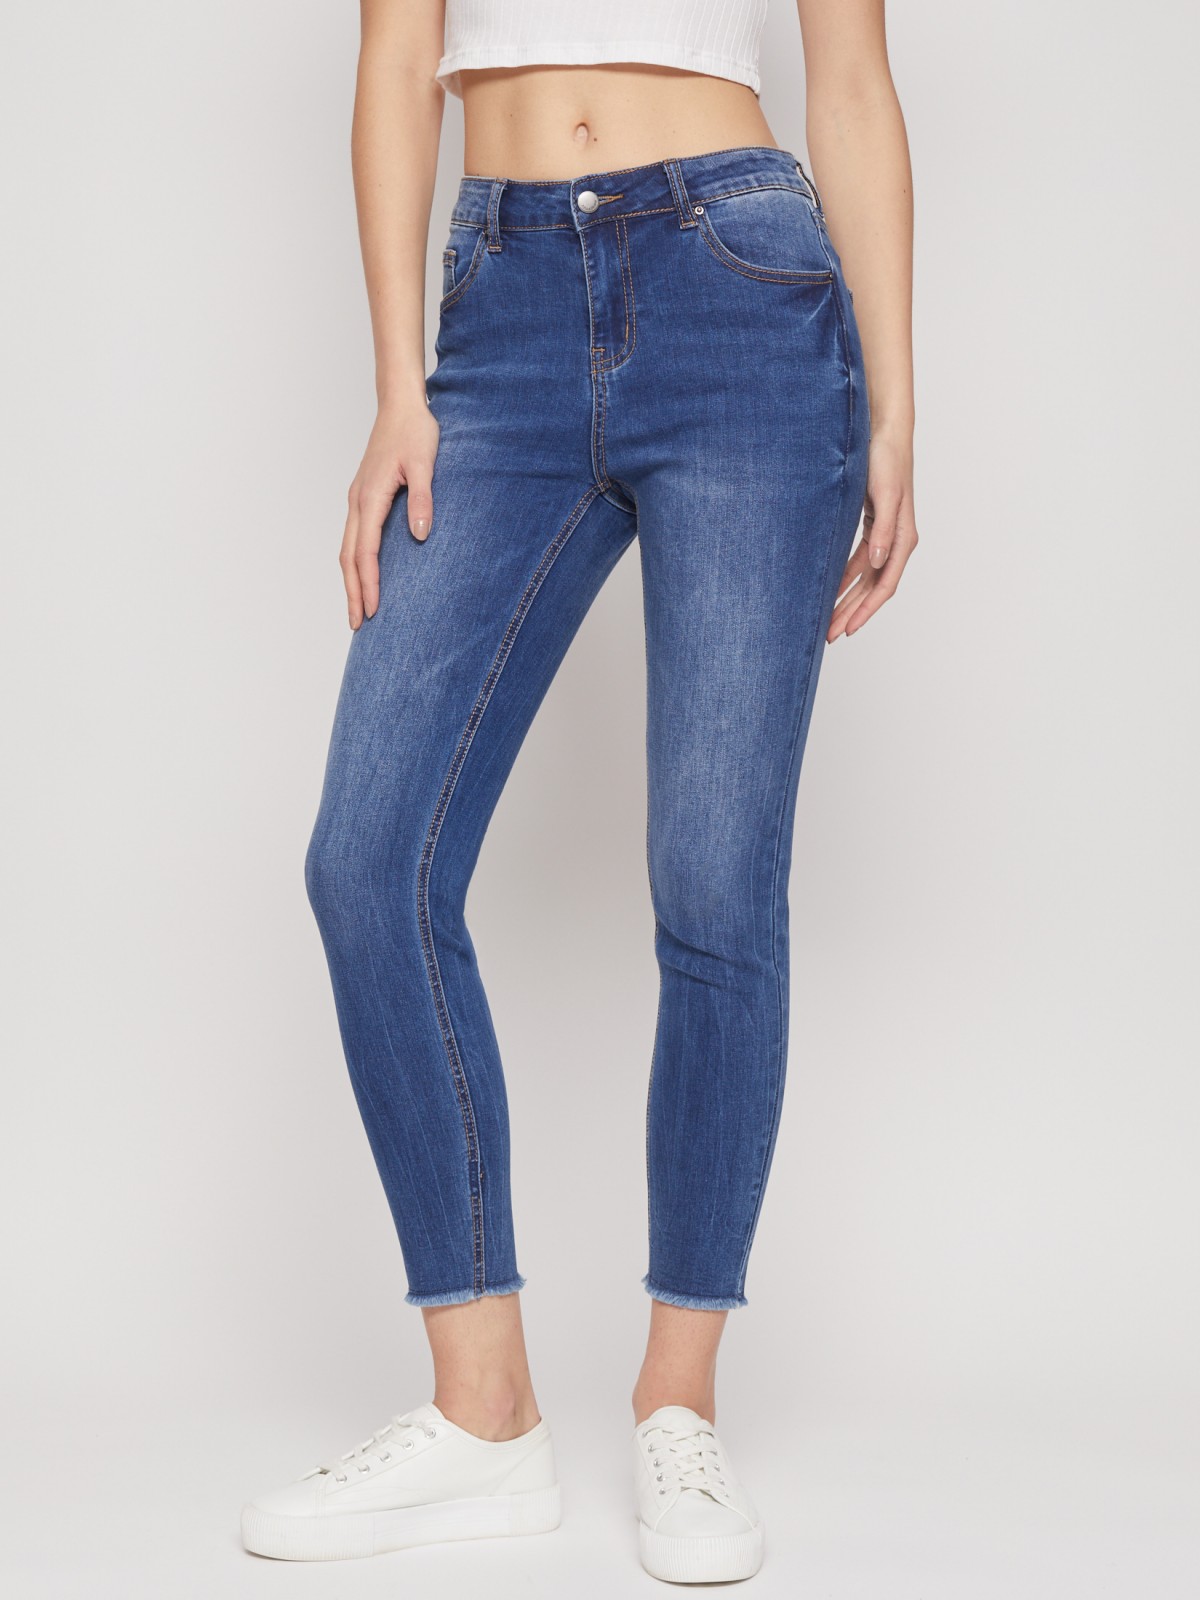 Укороченные джинсы силуэта Skinny zolla 02222714S023, цвет голубой, размер 26 - фото 3